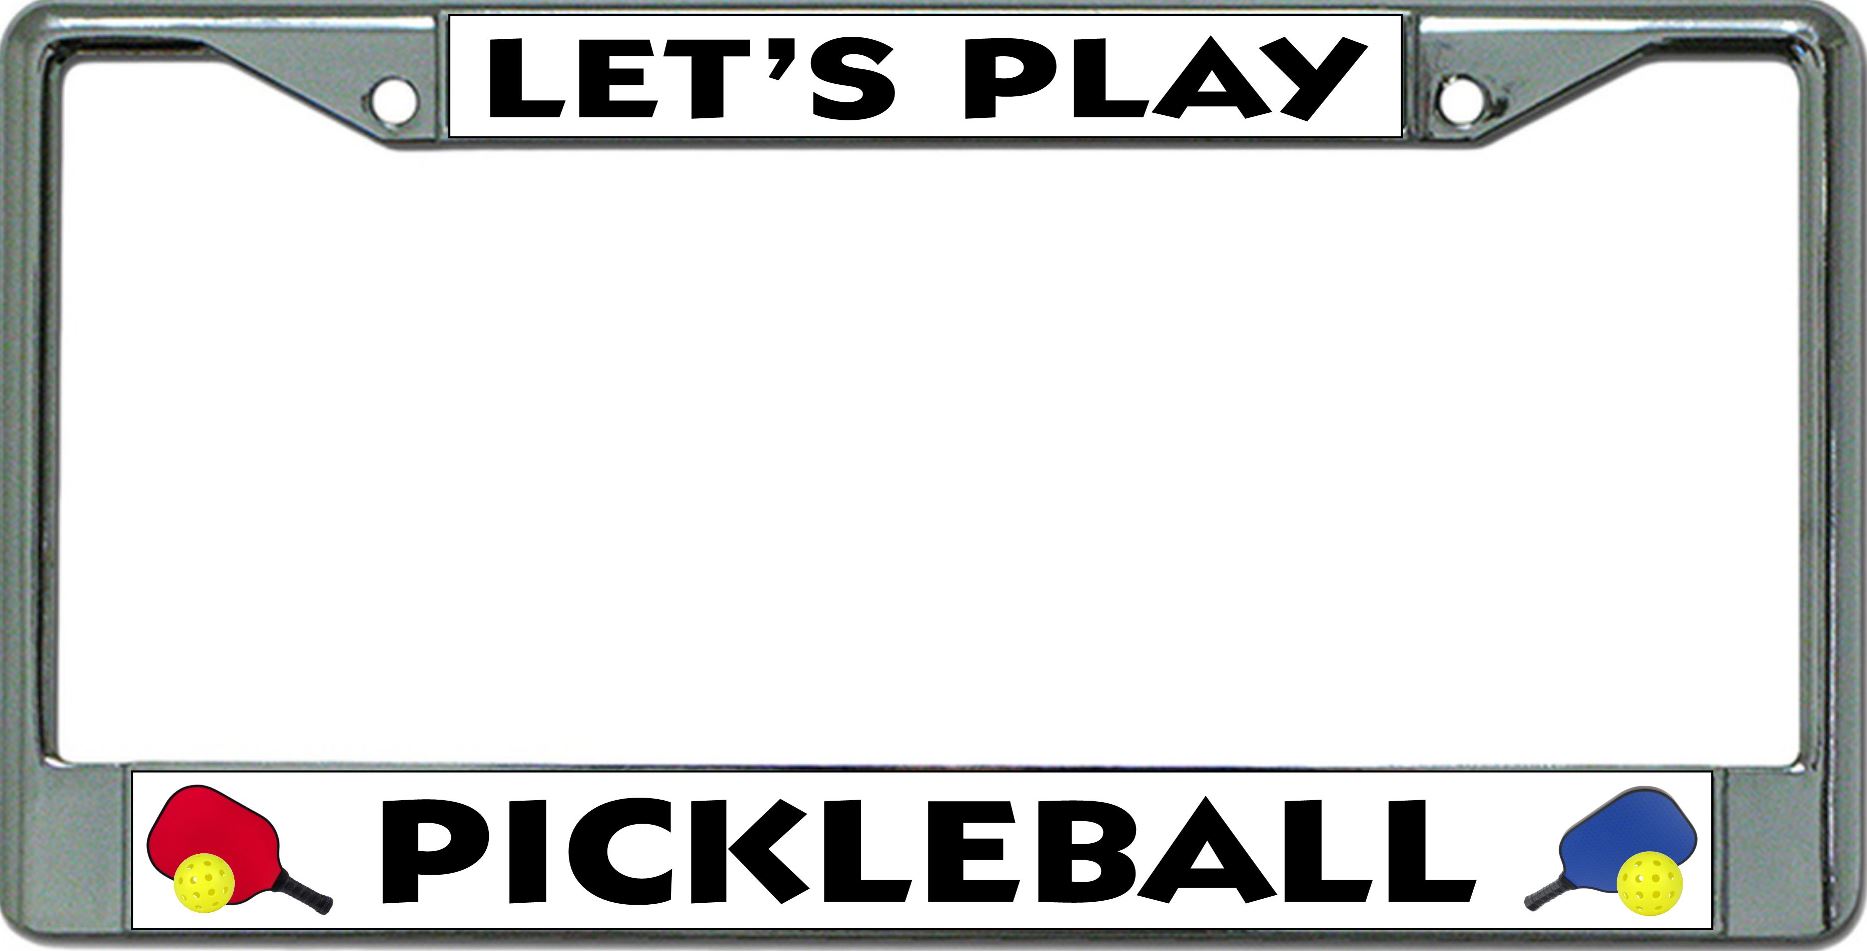 Lets Play Pickleball Chrome License Plate FRAME